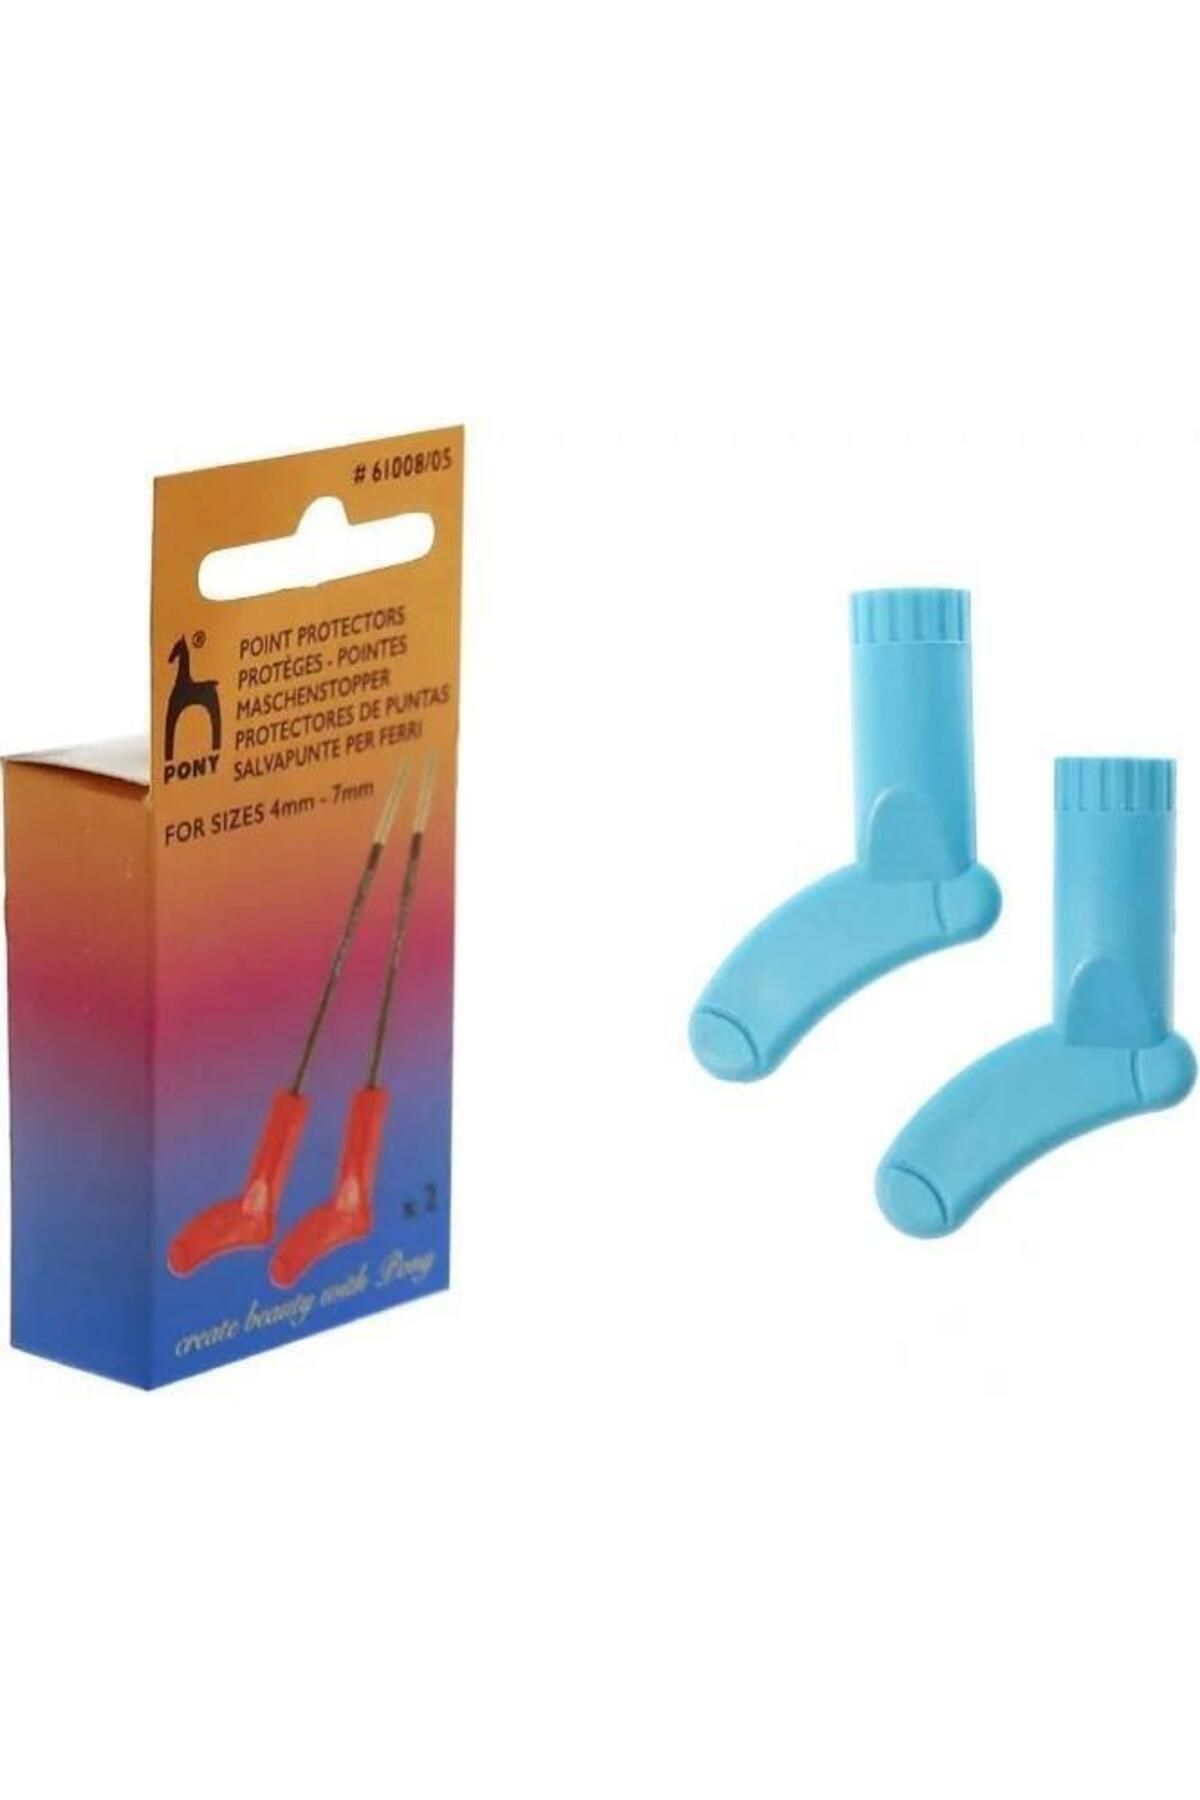 PONY Çorap Figürlü Şiş Ucu Koruyucu 4-7mm Arası İçin Uygundur